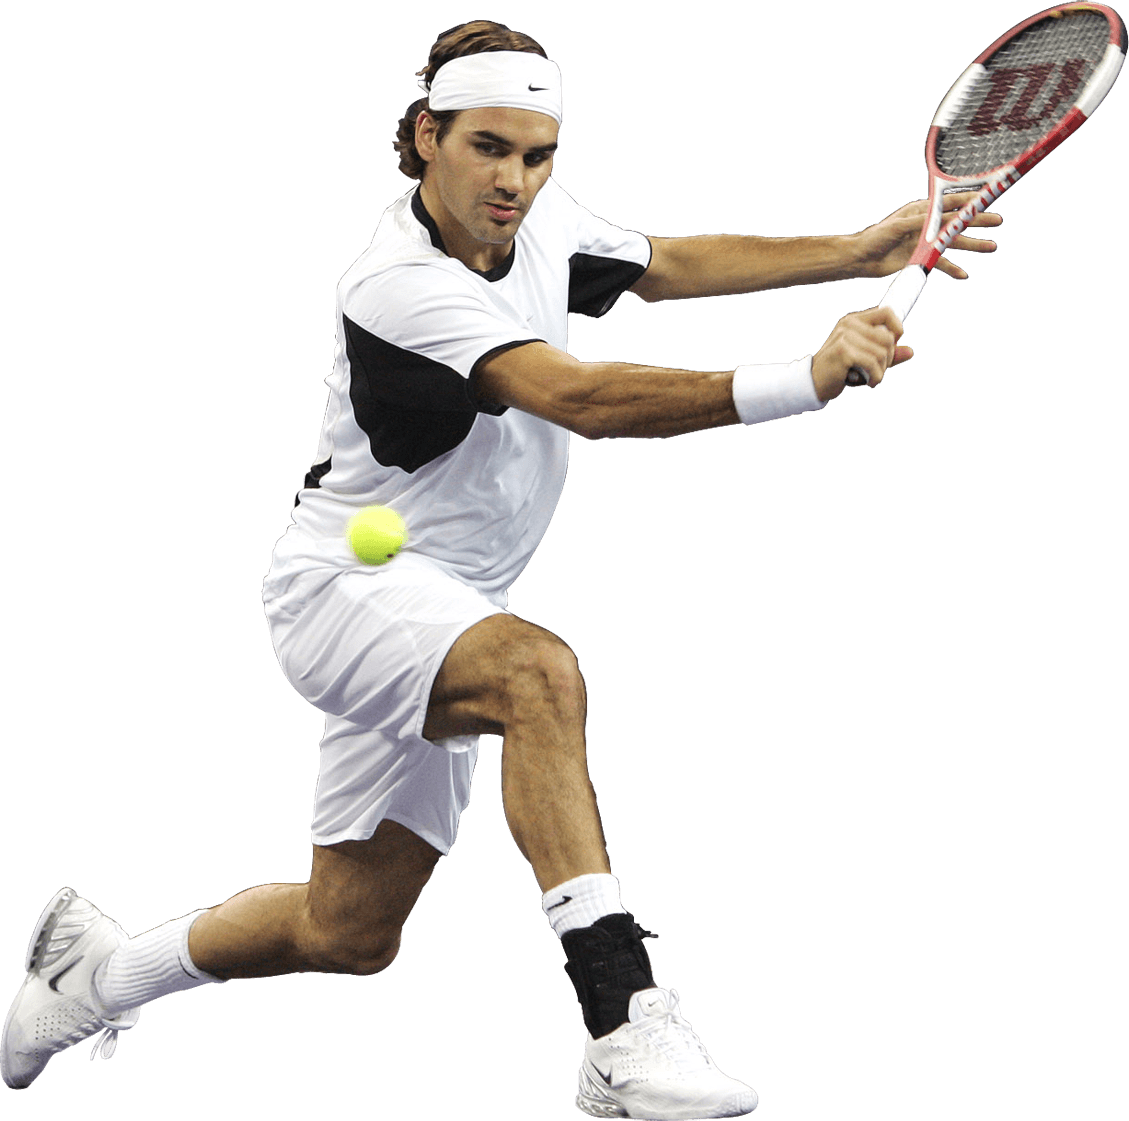 Immagine Trasparente del giocatore di tennis